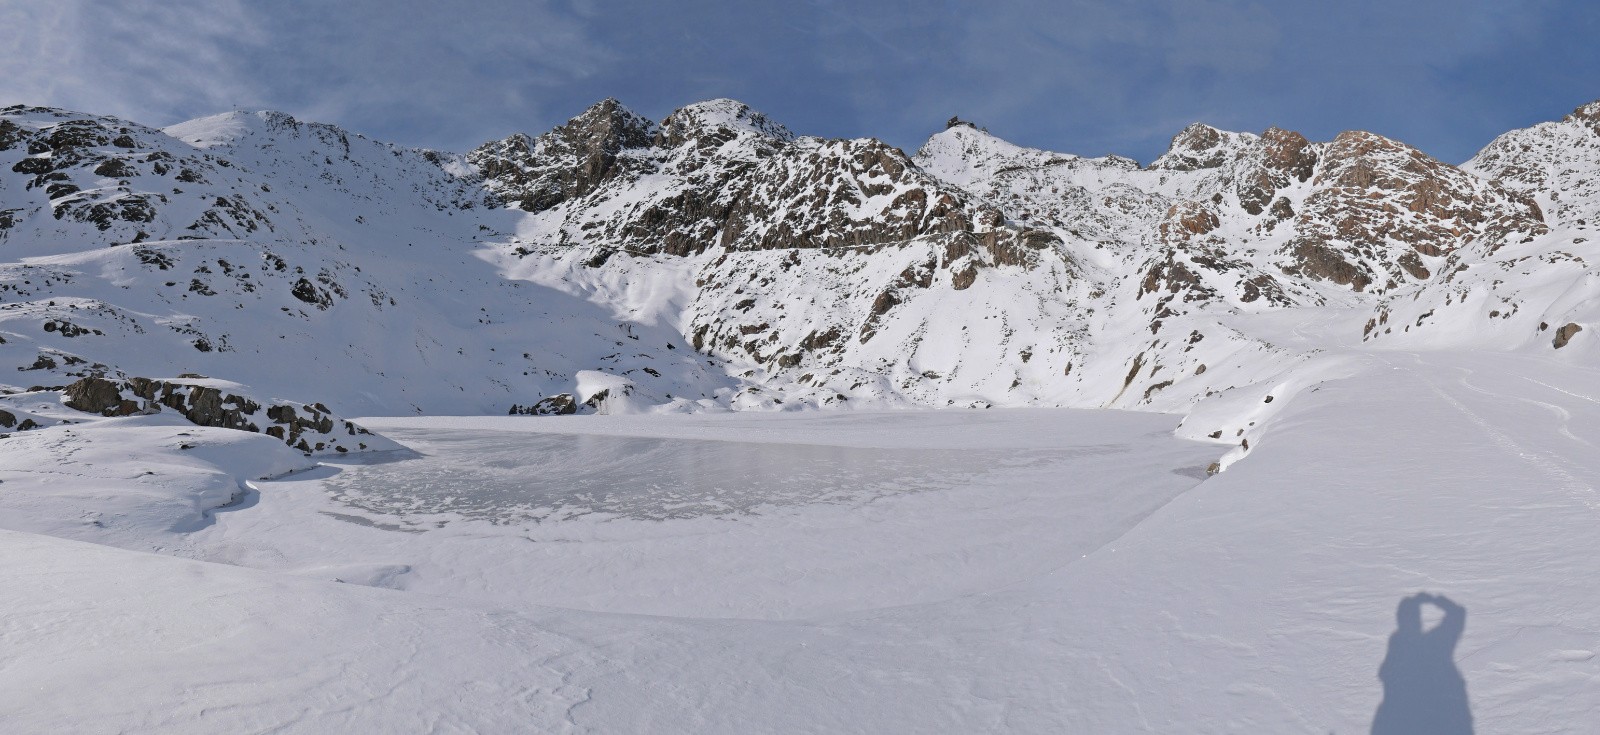 Lac de Sarenne - un deuxième bout de glacier sur la gauche, même 2-3 crevasses